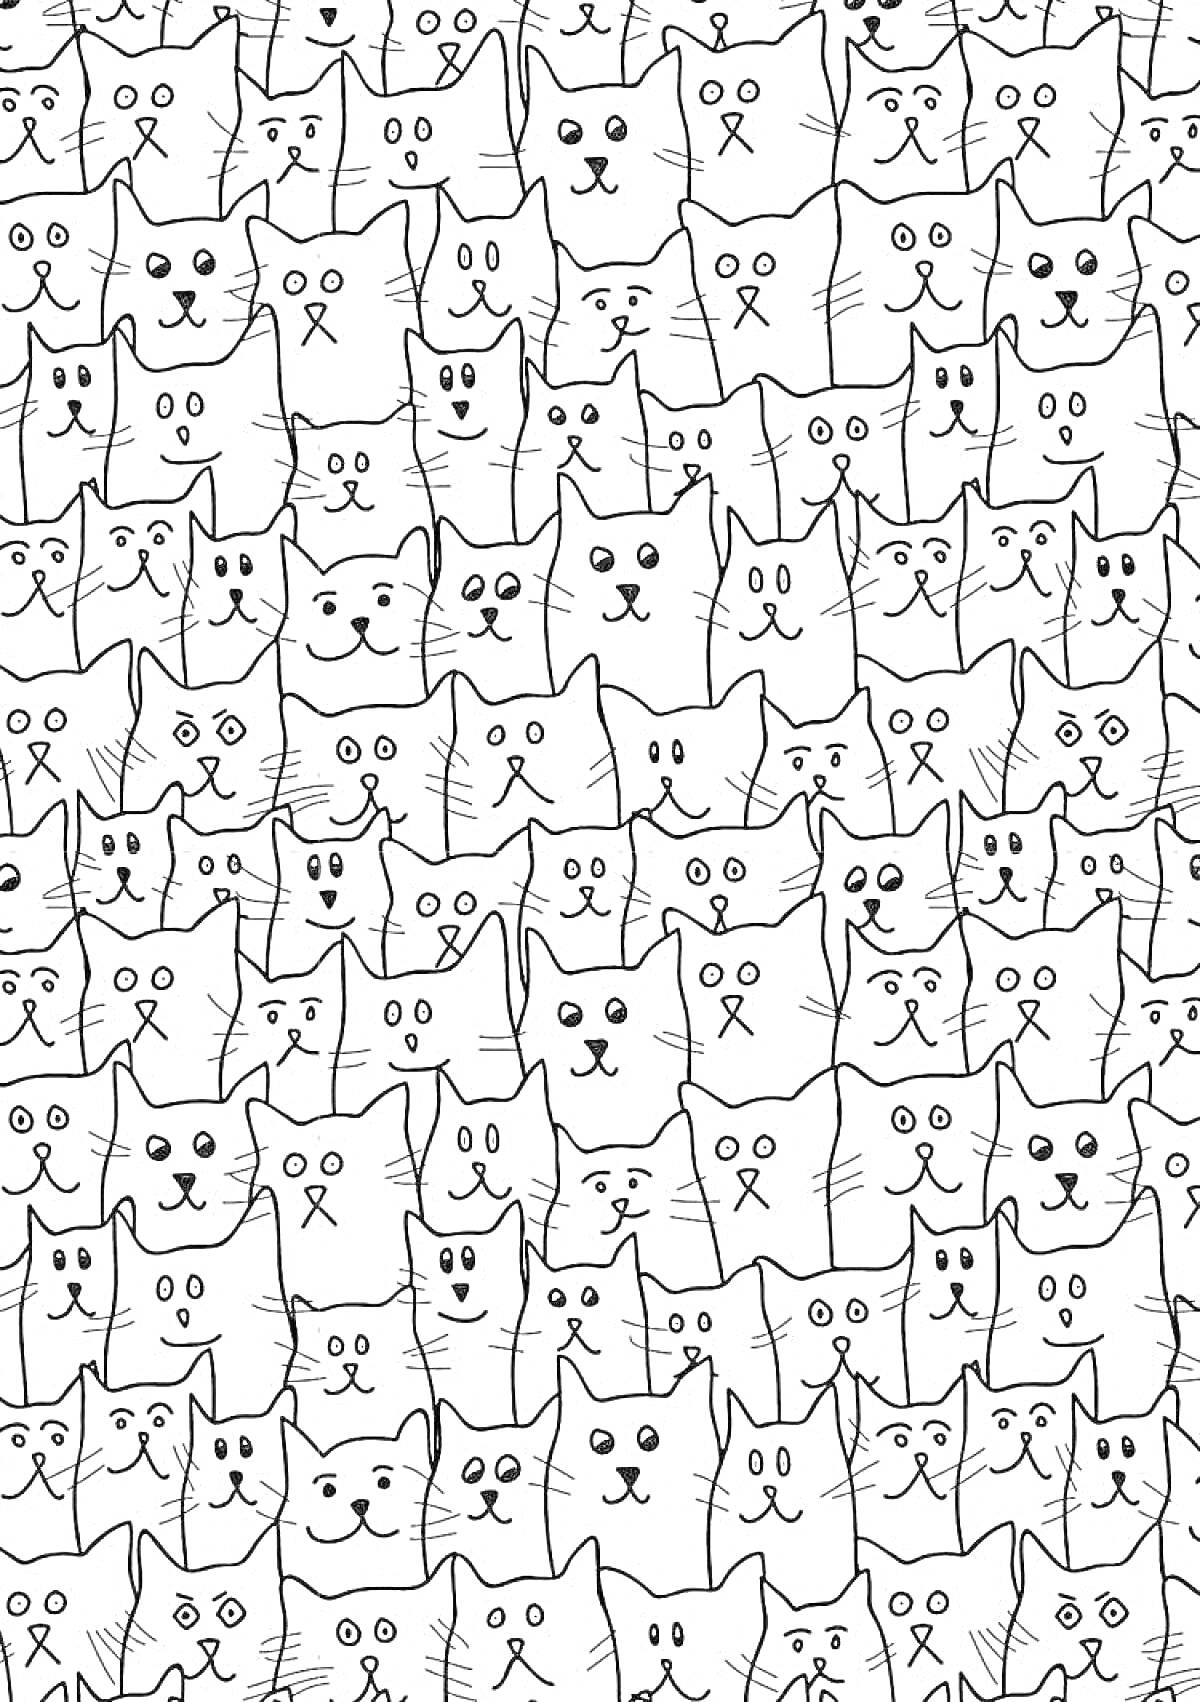 Раскраска множество различных котиков с разными выражениями лиц